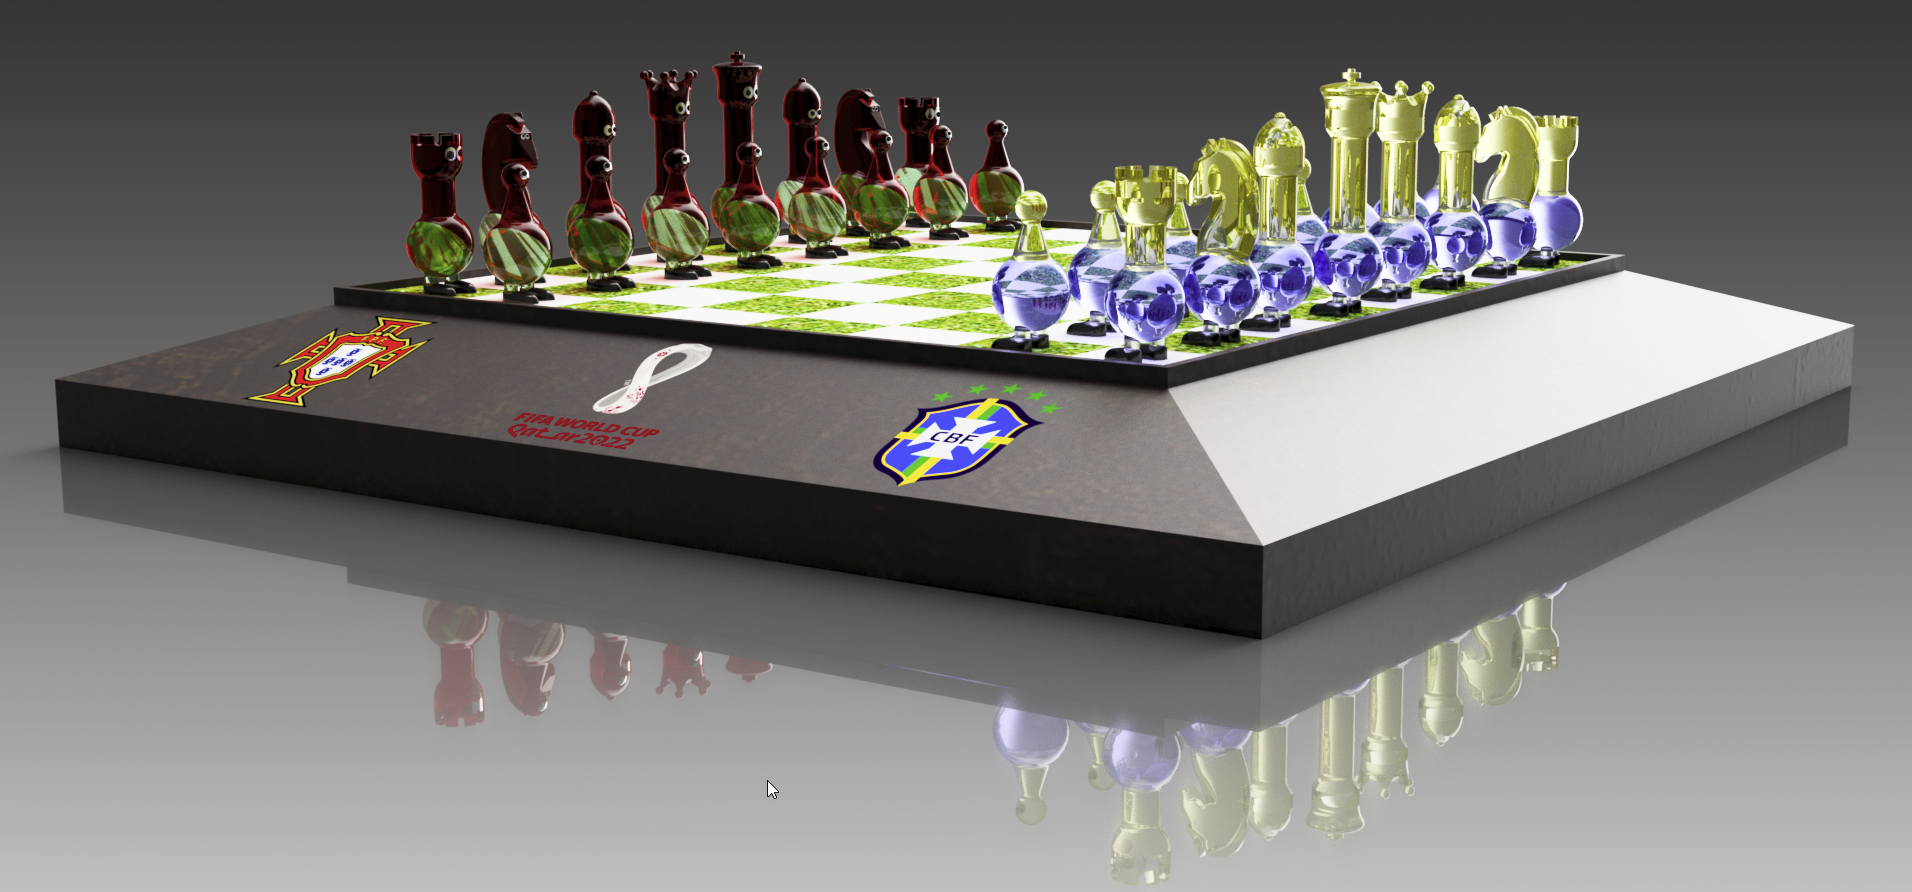 Aula 450 - Modelamento do Peão peça do Jogo de Xadrez no Fusion 360 